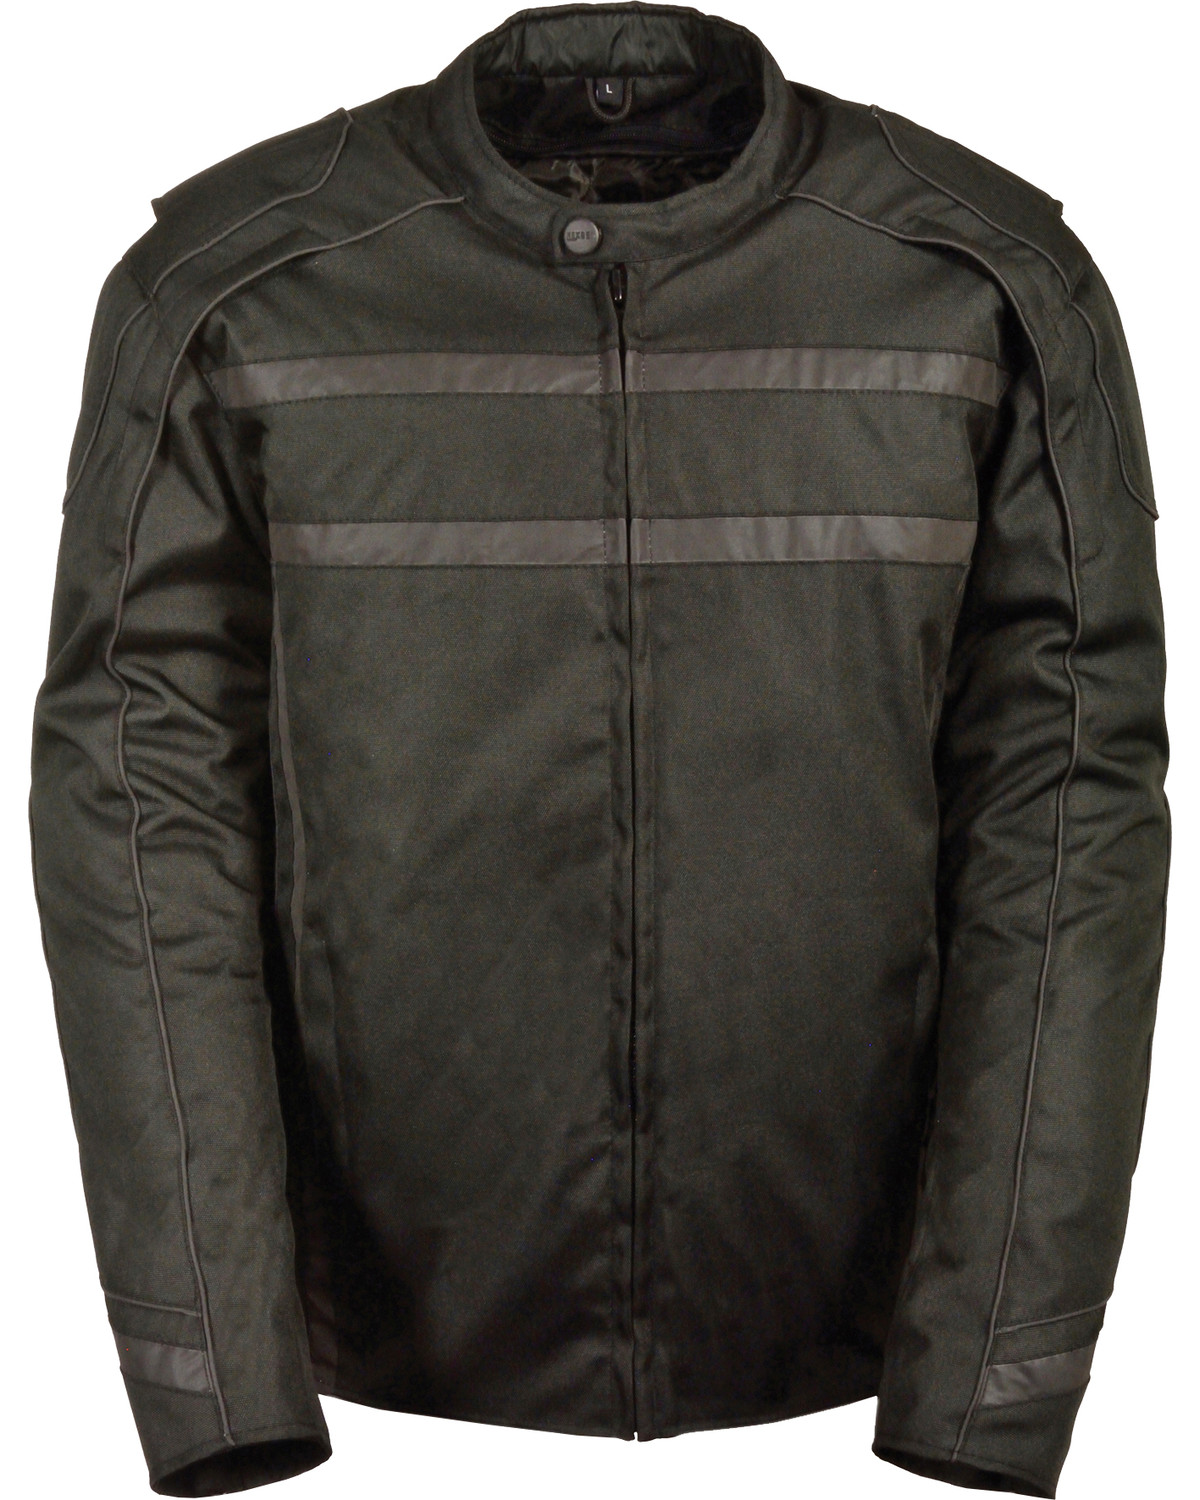 Milwaukee Leather Vented Reflective Jacket